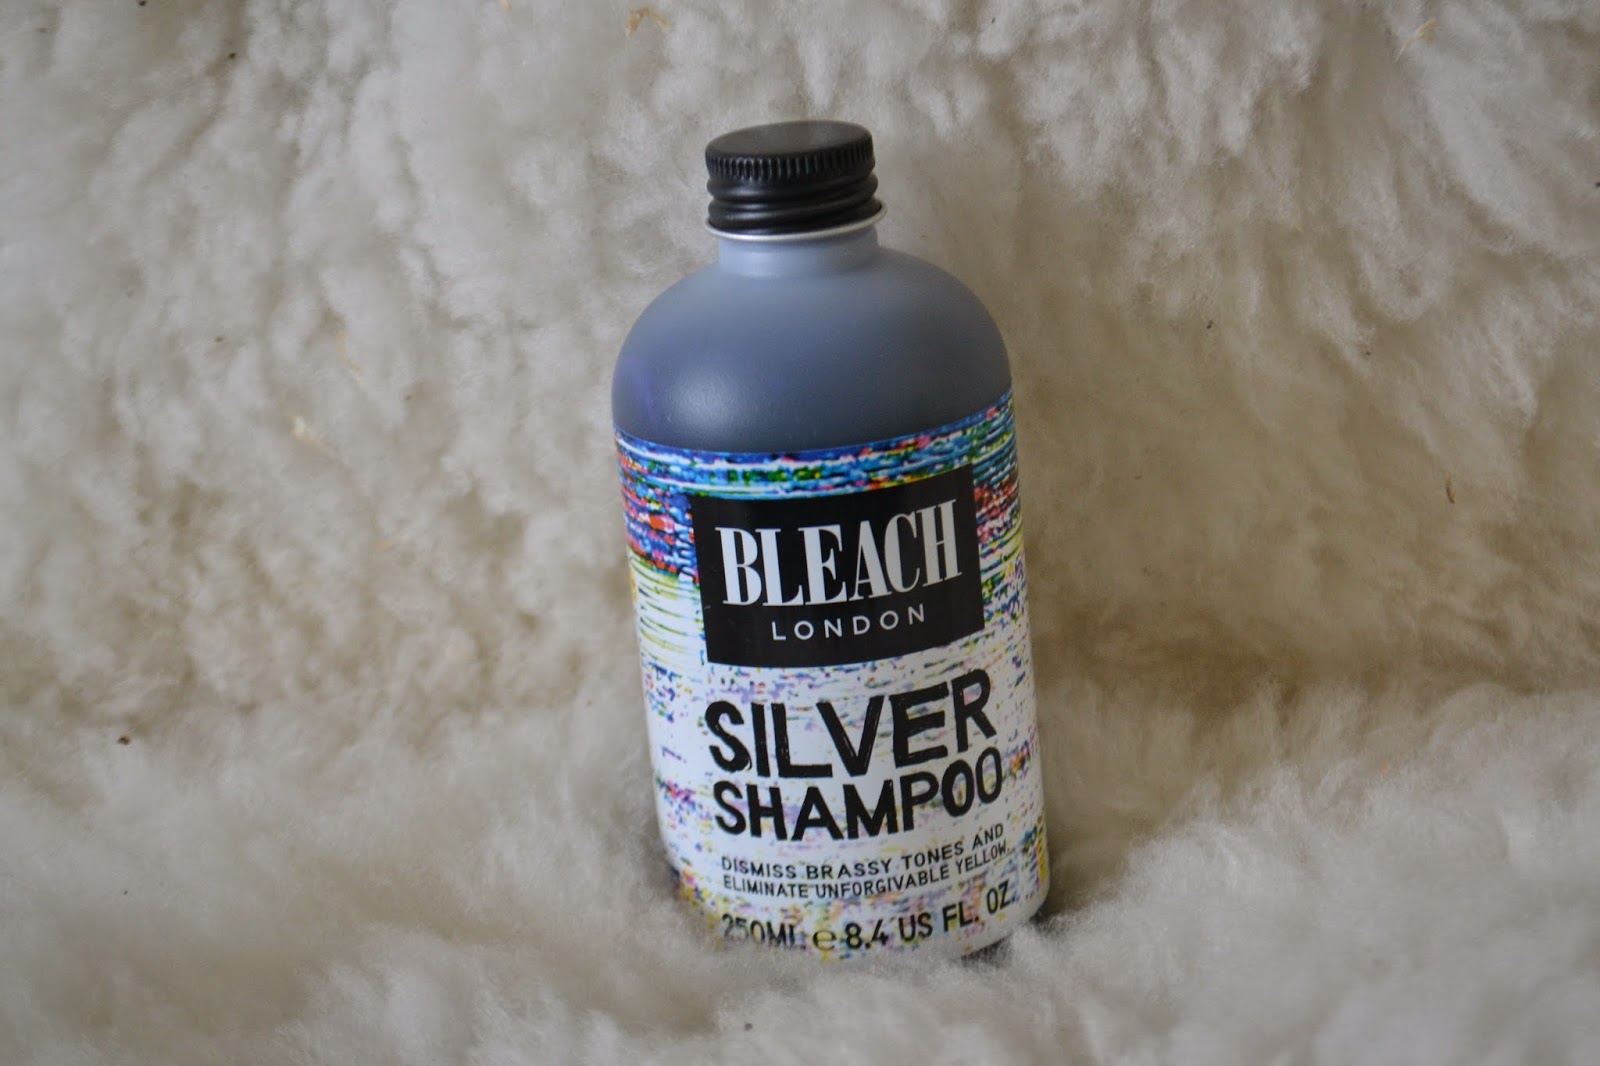 Bleach London Silver Shampoo - wide 7